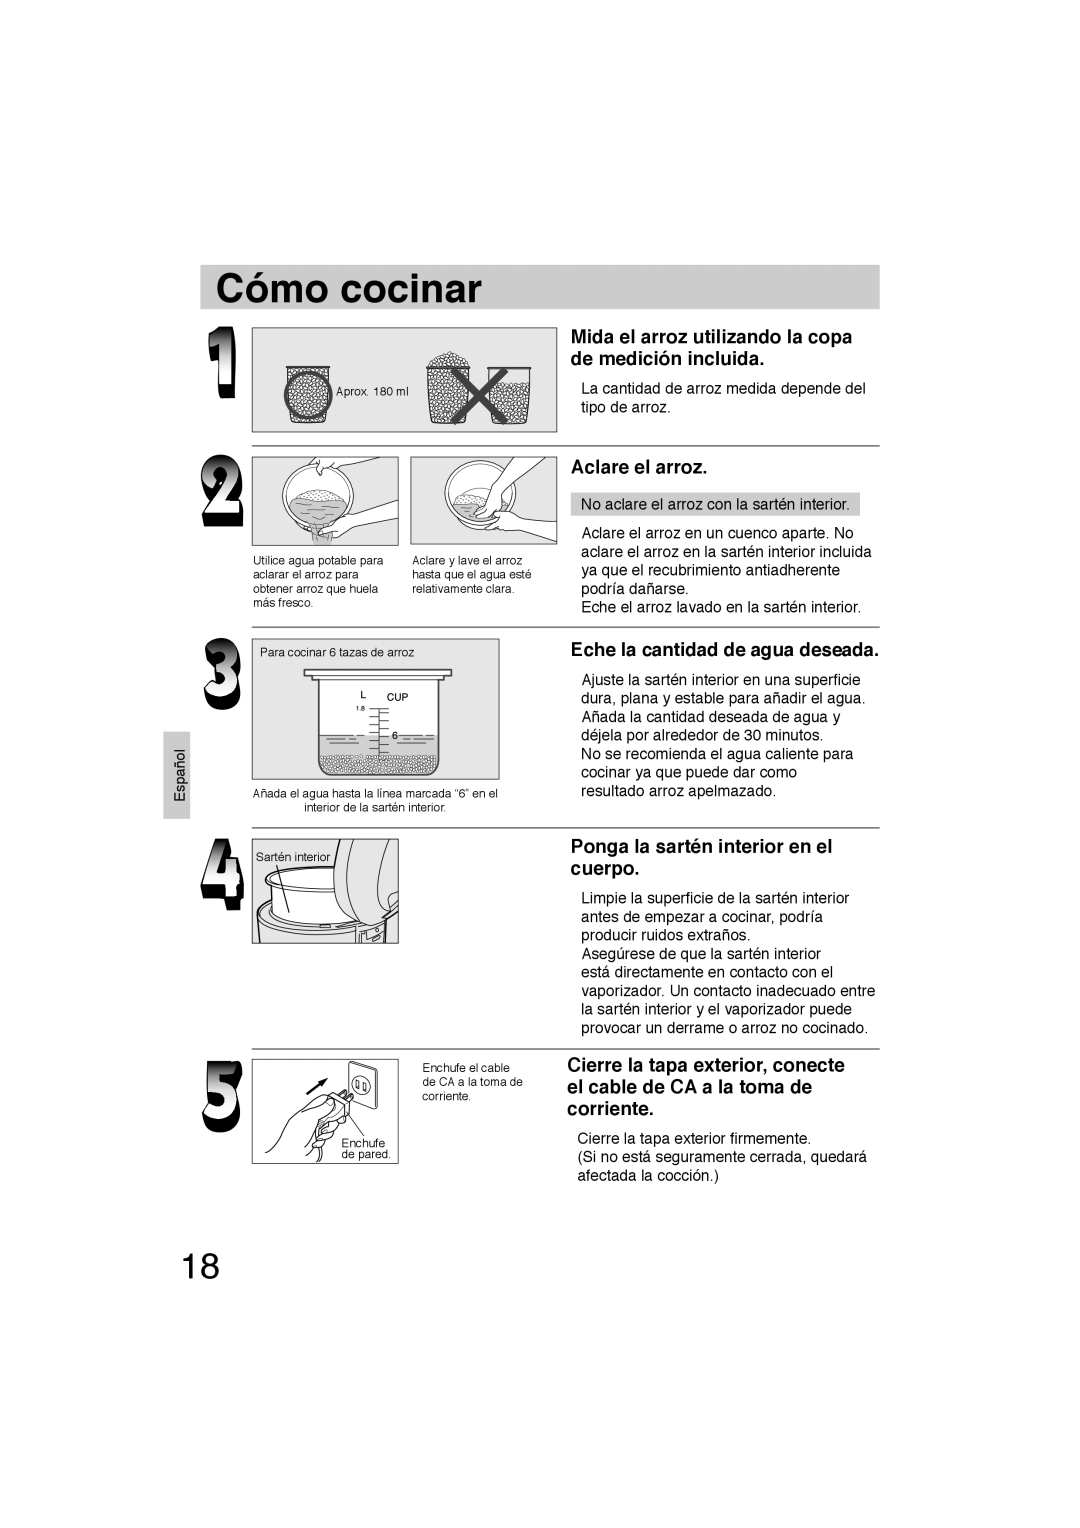 Panasonic SR-TEL18 manual Cómo cocinar, Mida el arroz utilizando la copa de medición incluida, Aclare el arroz 